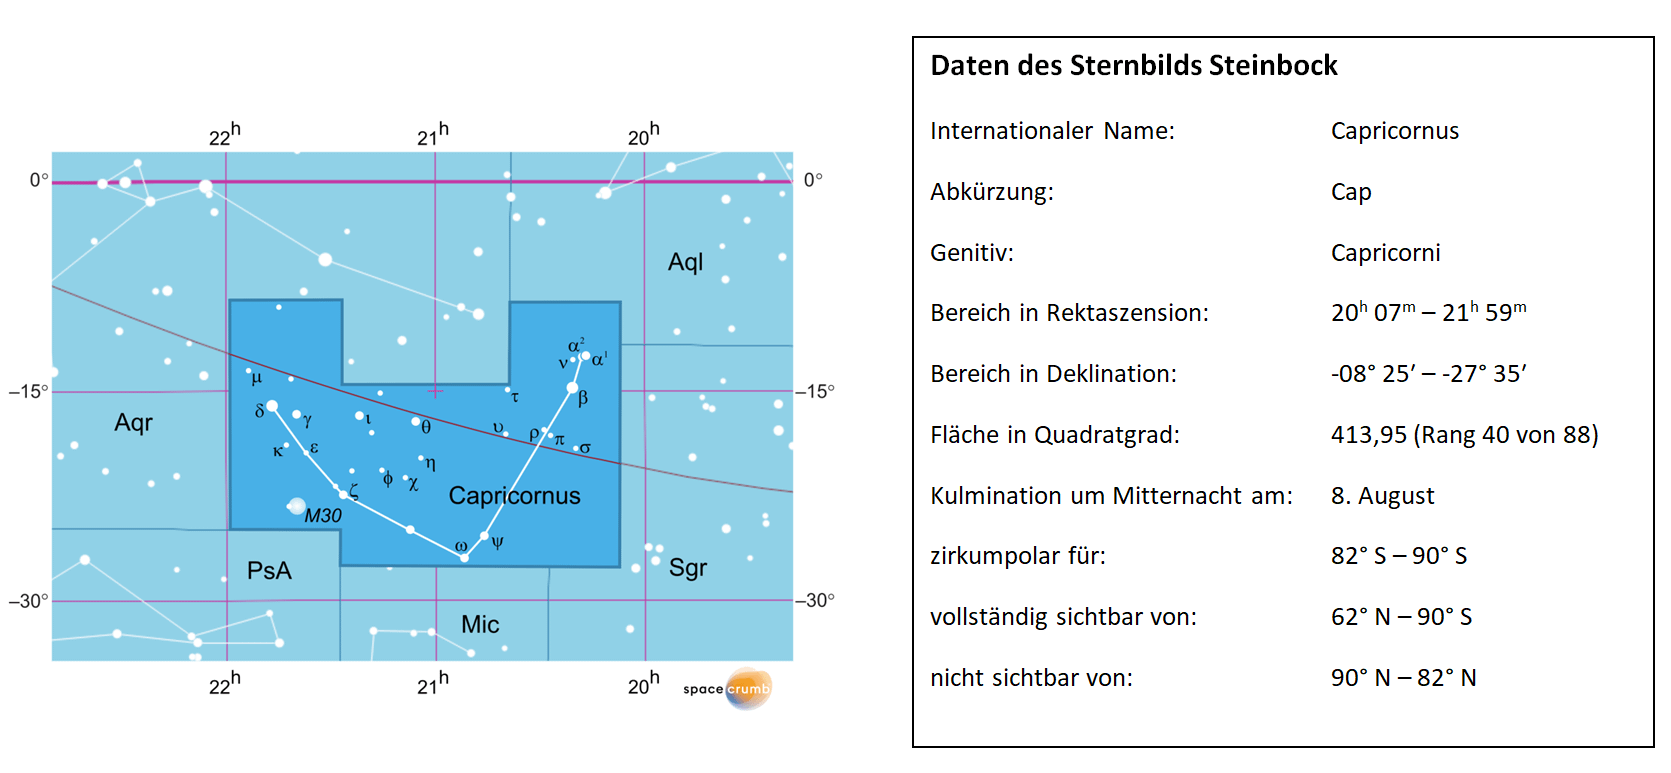 Links zeigt eine mit Koordinaten versehene Karte eines Himmelsausschnitts weiße Sterne auf hellblauem Hintergrund. Die Fläche, die das Sternbild Steinbock einnimmt, ist dunkelblau hervorgehoben. Eine Tabelle rechts gibt wichtige Daten des Sternbilds Steinbock an.